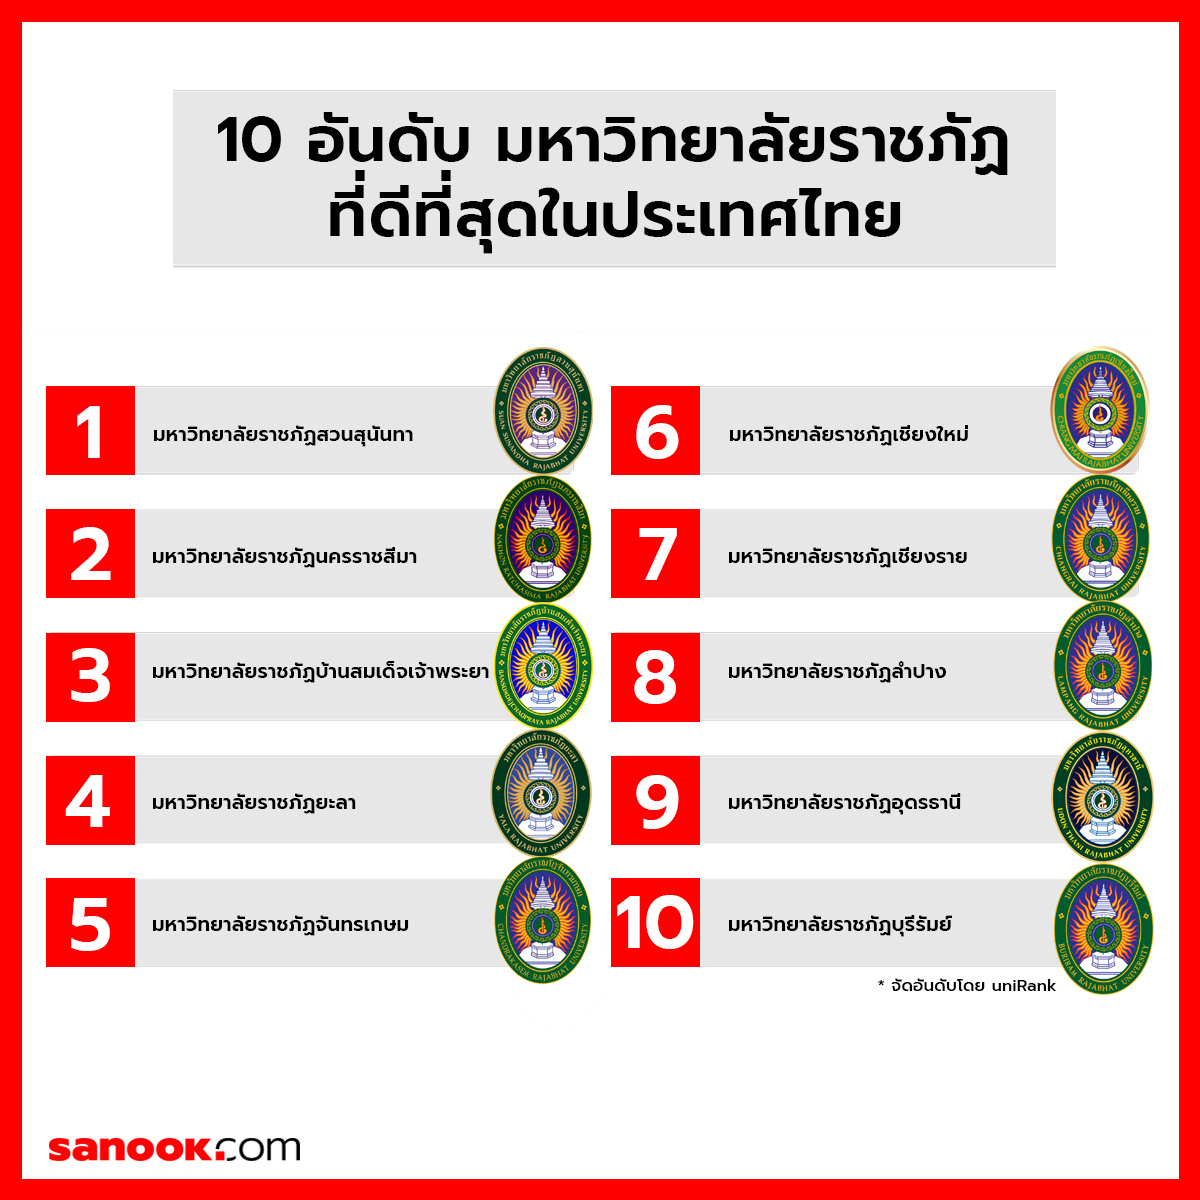 มหาวิทยาลัยราชภัฏ ที่ดีที่สุดในประเทศไทย